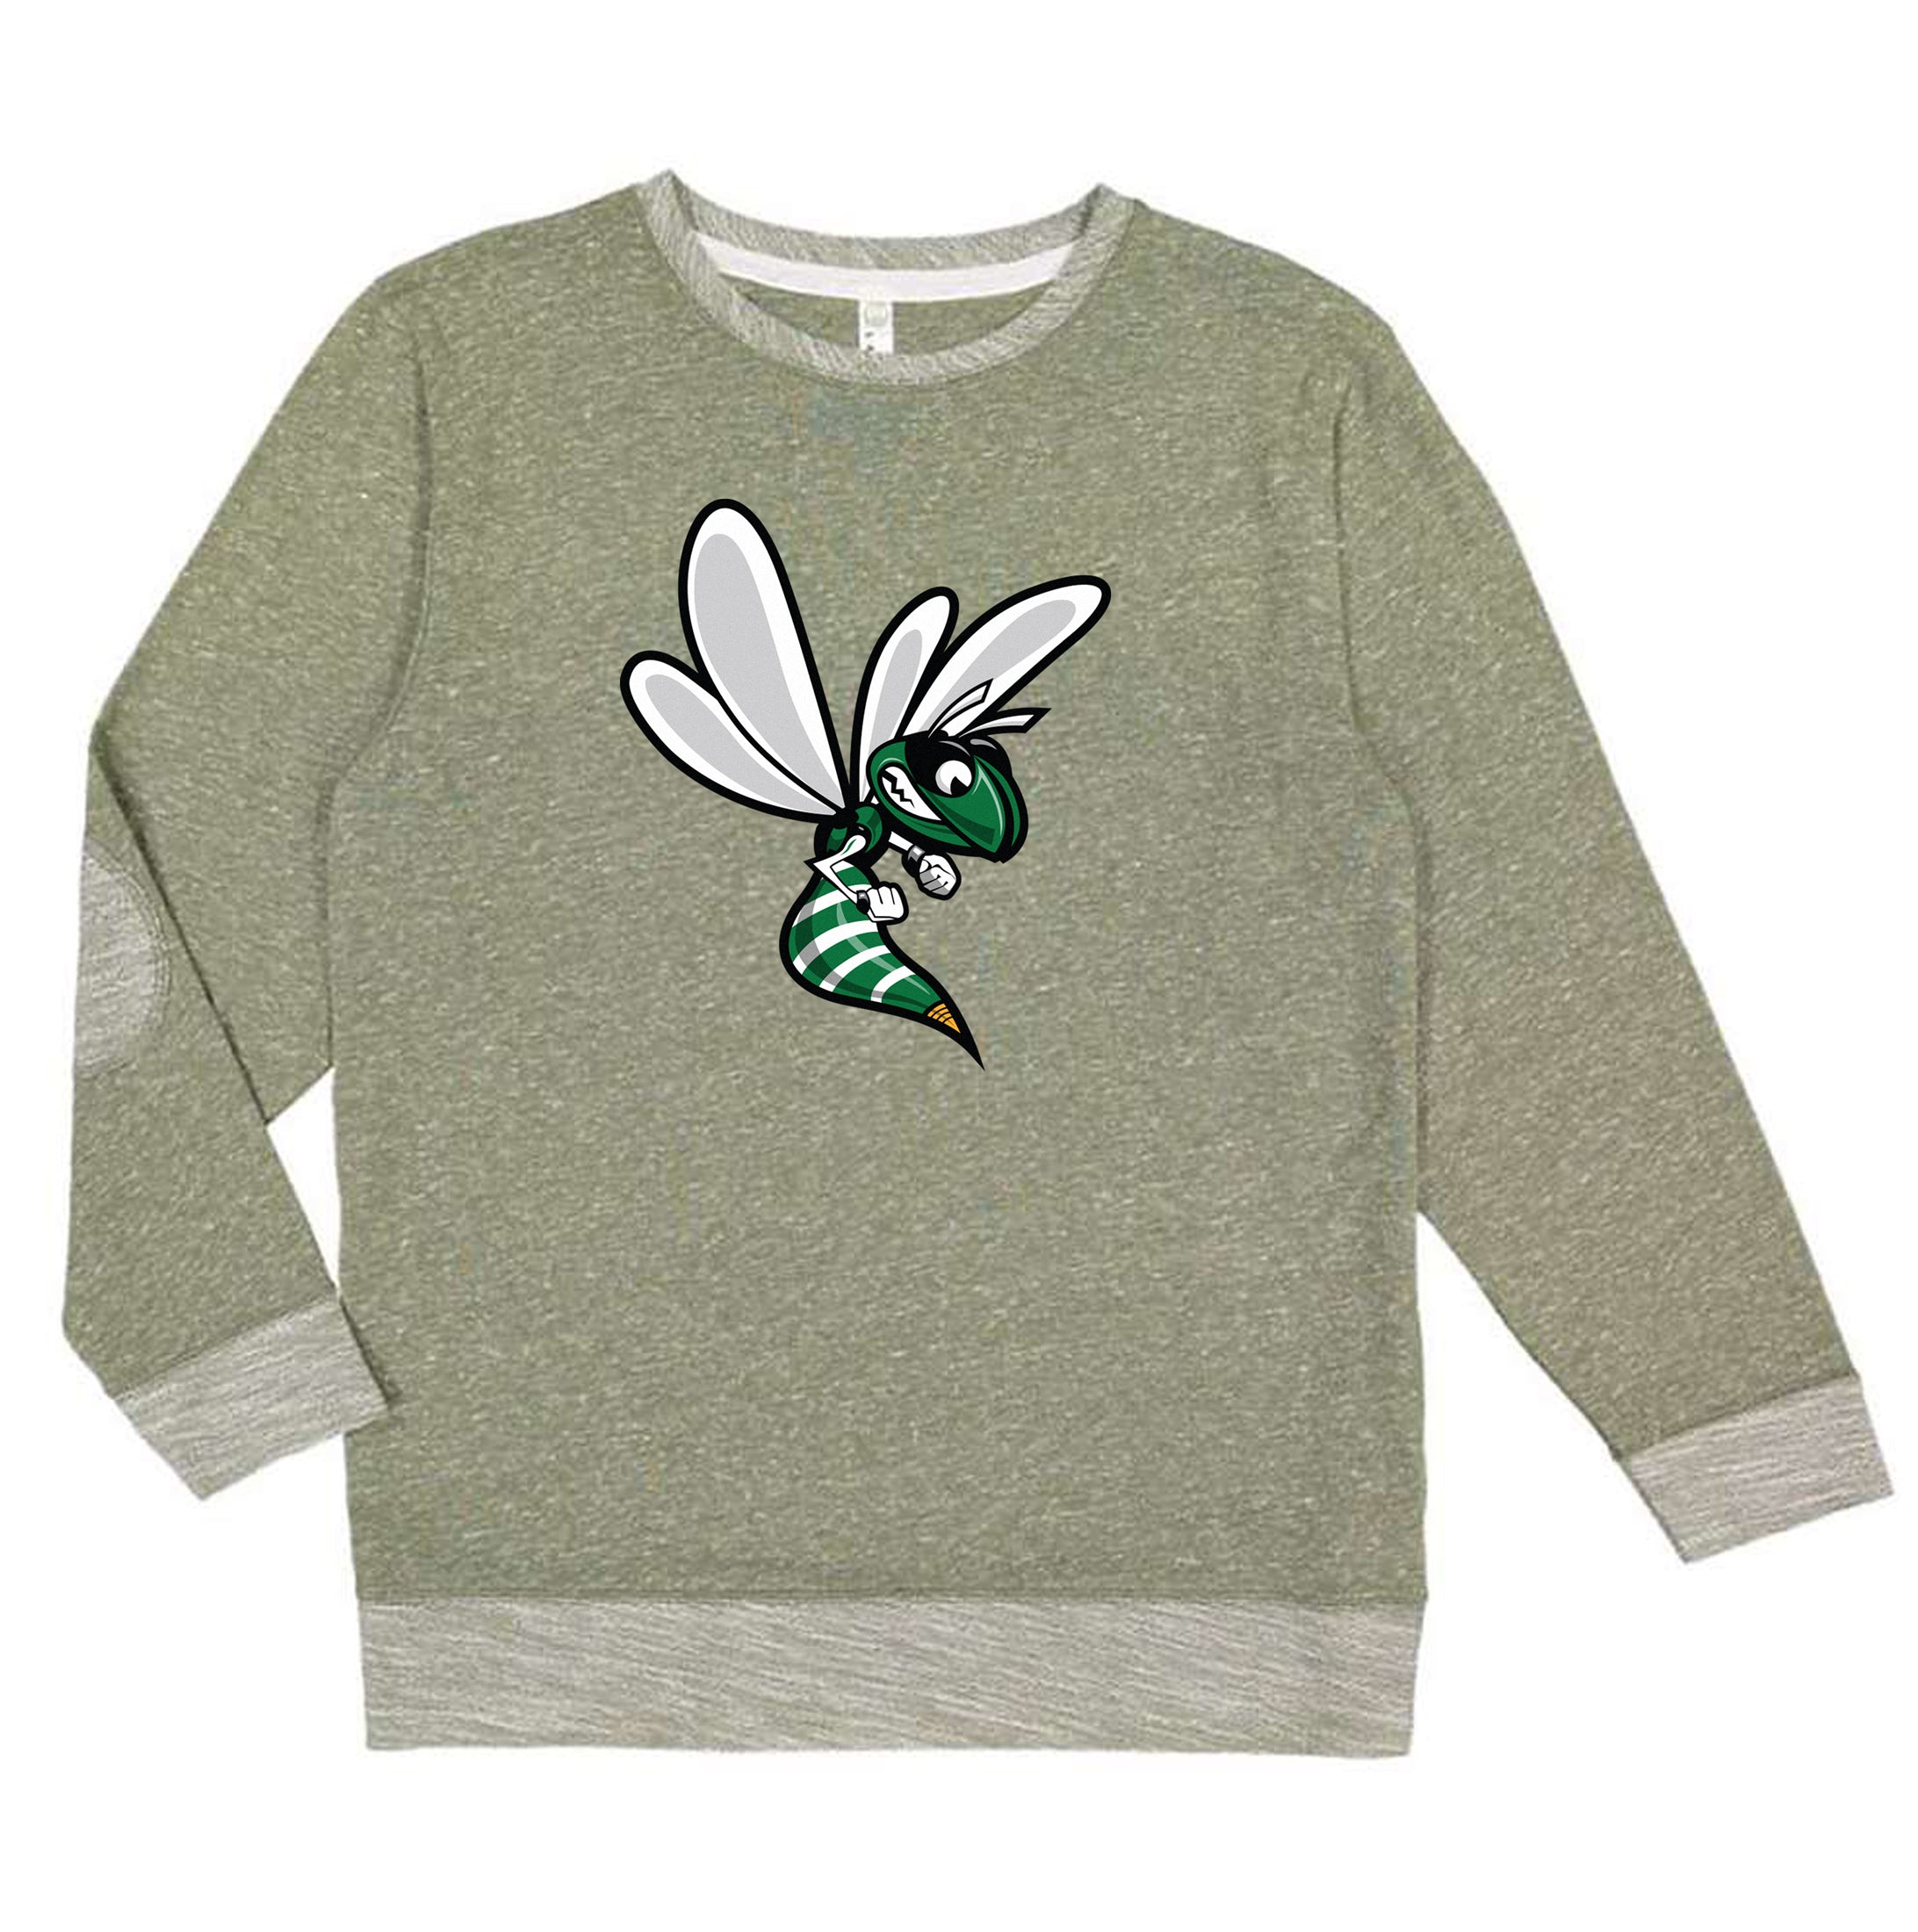 Hornet - Melange - Toddler Sweater